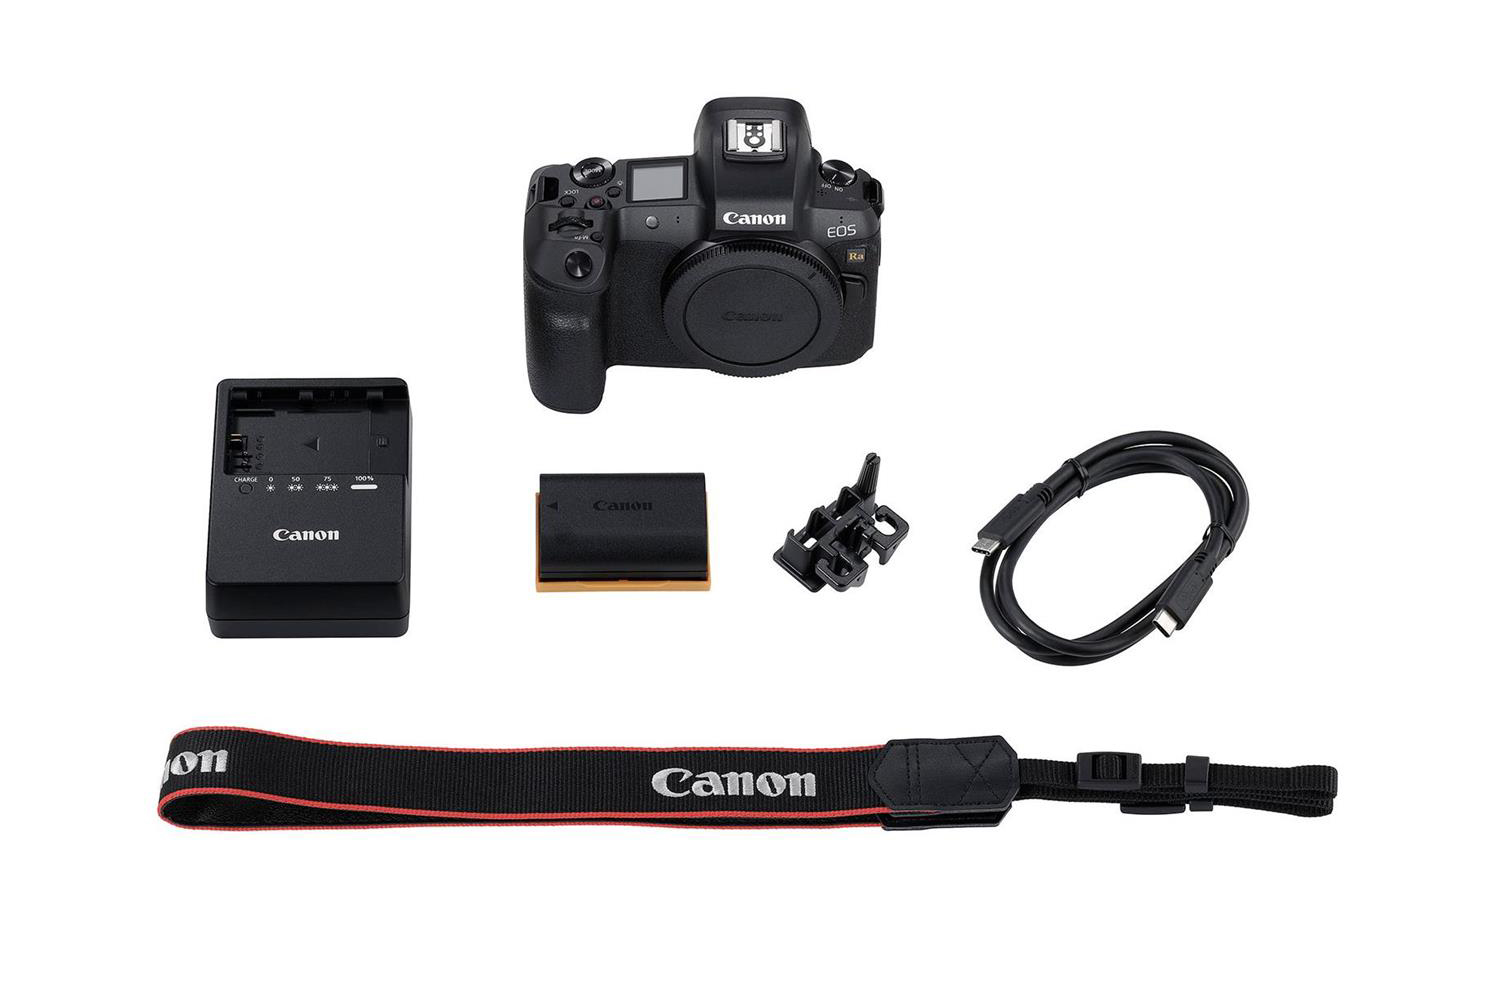 Canon giới thiệu EOS Ra, máy ảnh không gương lật full-frame dành cho nhiếp ảnh thiên văn